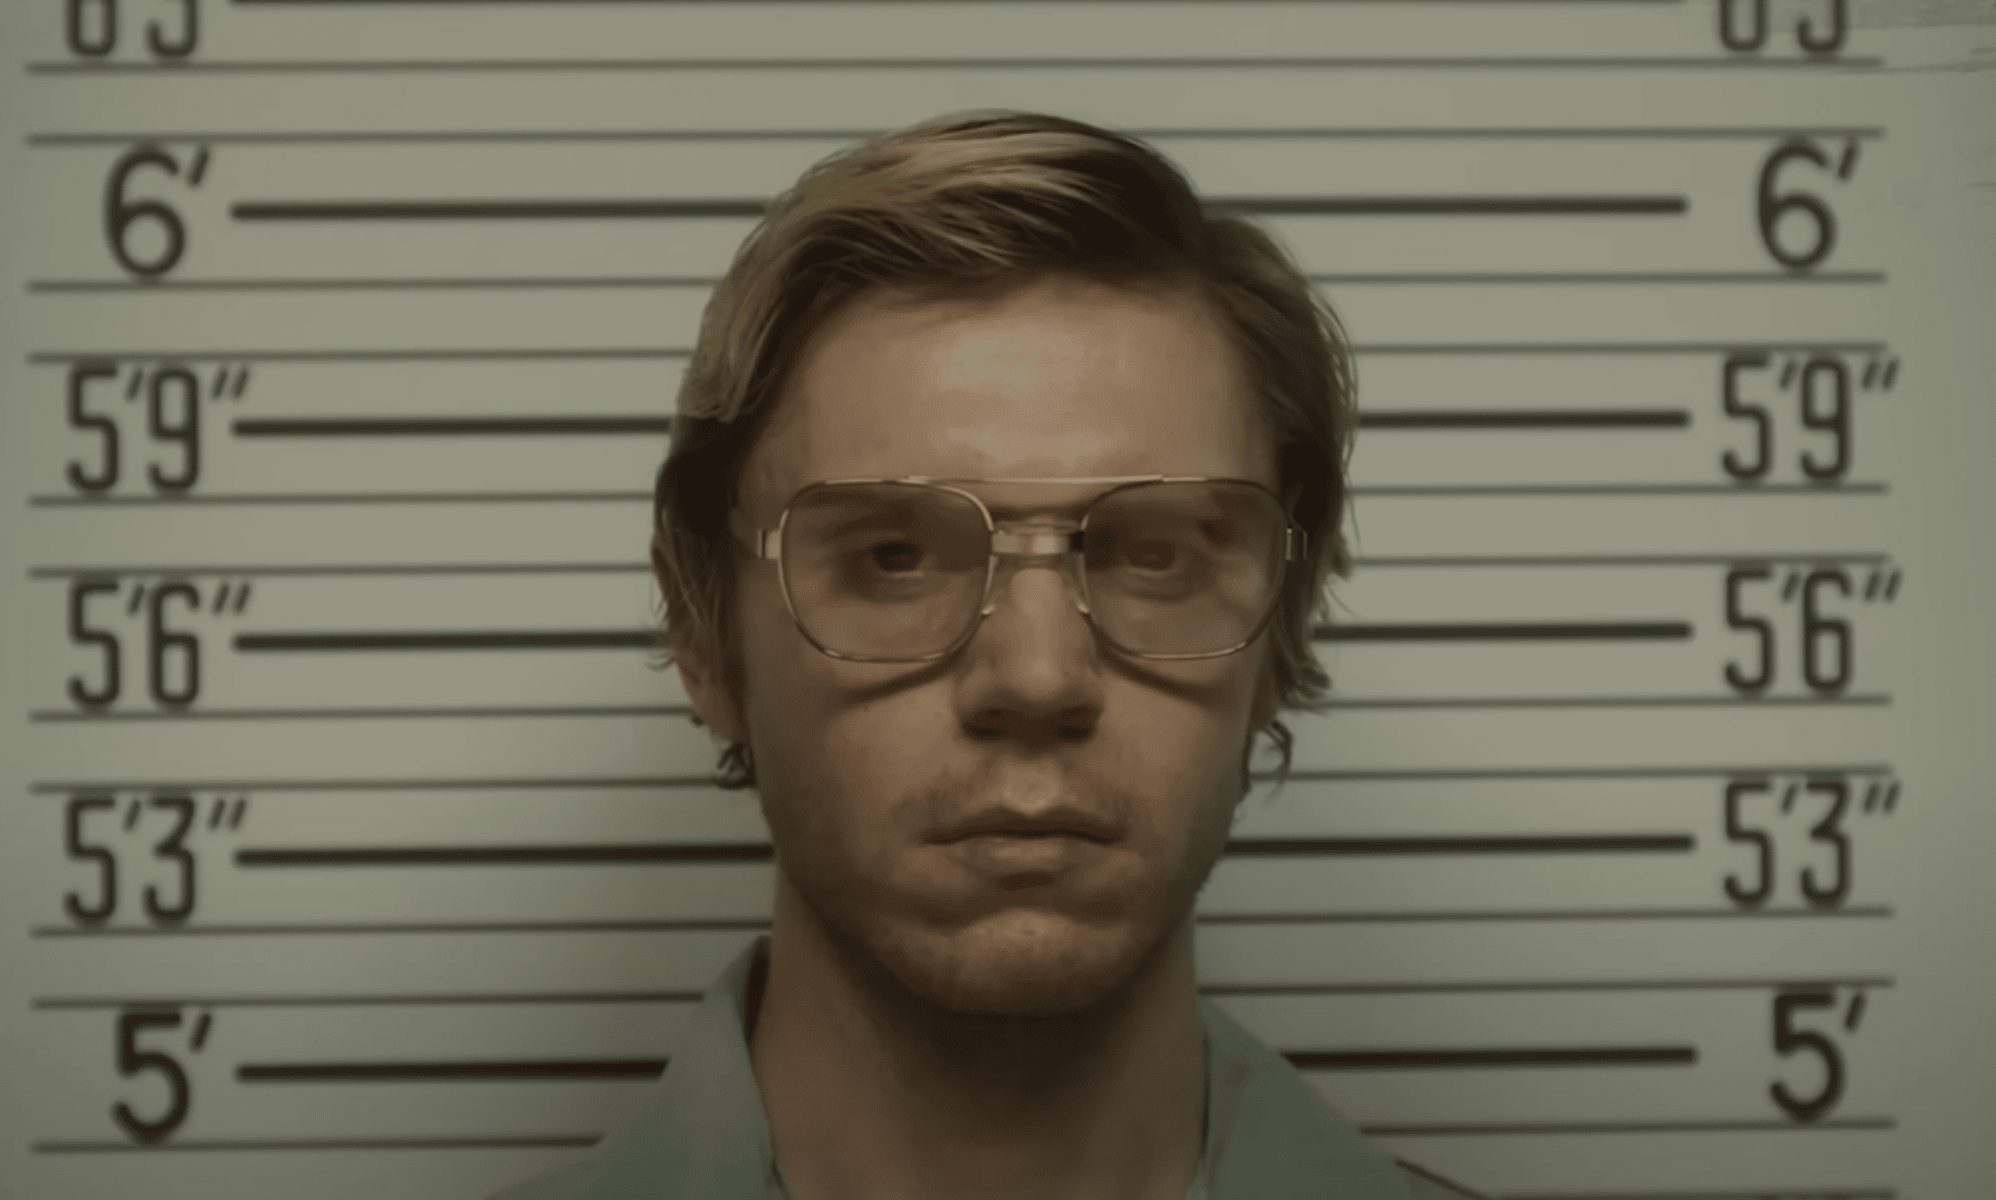 Evan Peters plays Jeffrey Dahmer in Netflix's Dahmer - Monster: The Jeffrey Dahmer Story